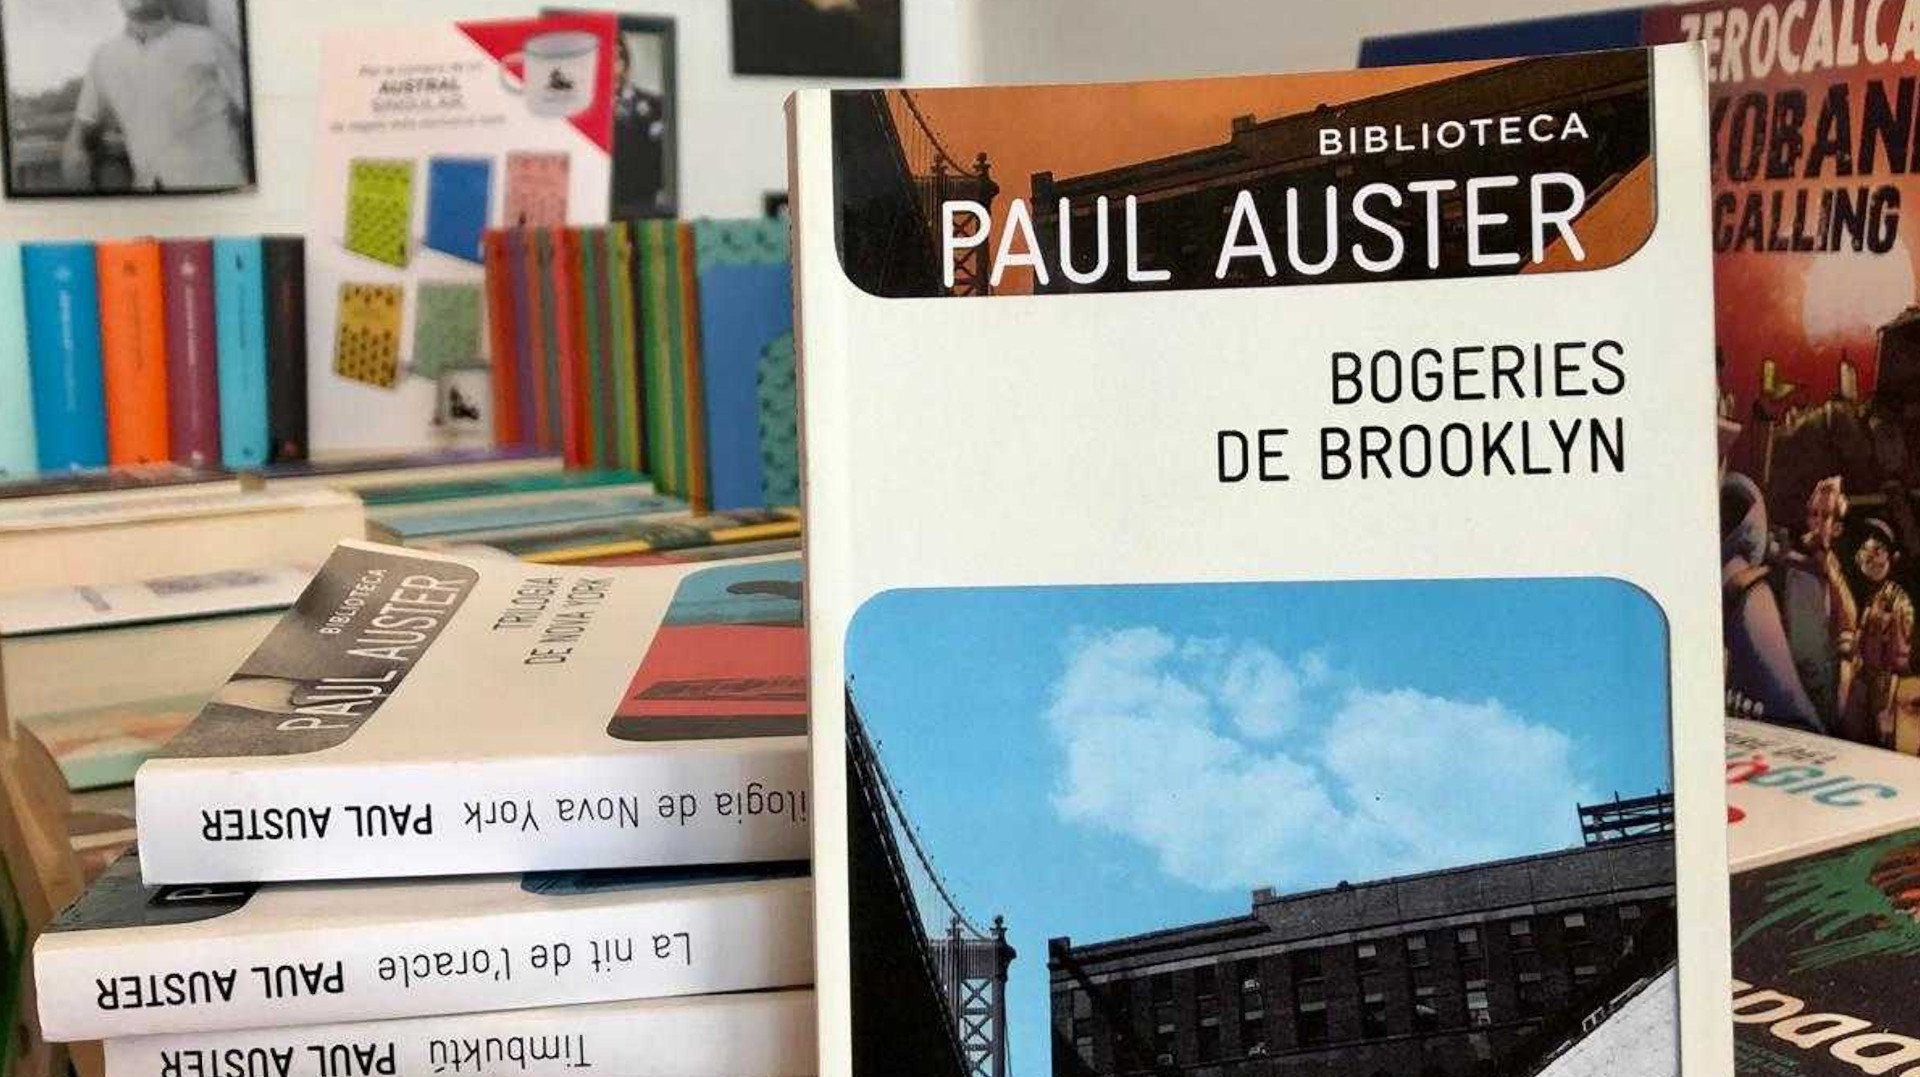 Vetlla de lectura col·lectiva en homenatge a Paul Auster